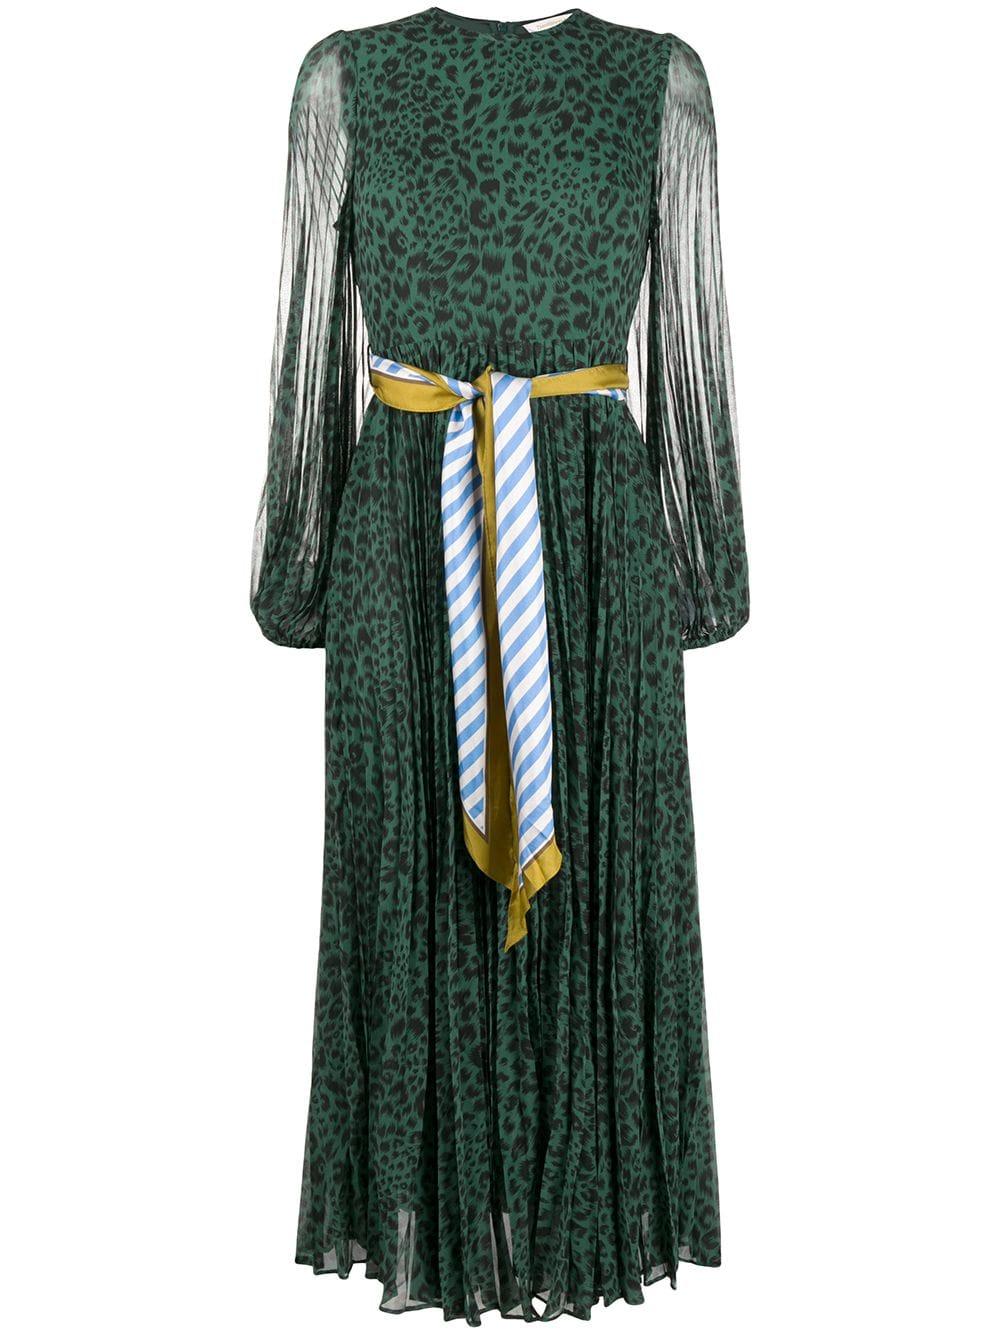 Zimmermann Leopard Print Belted Dress in Green | Lyst